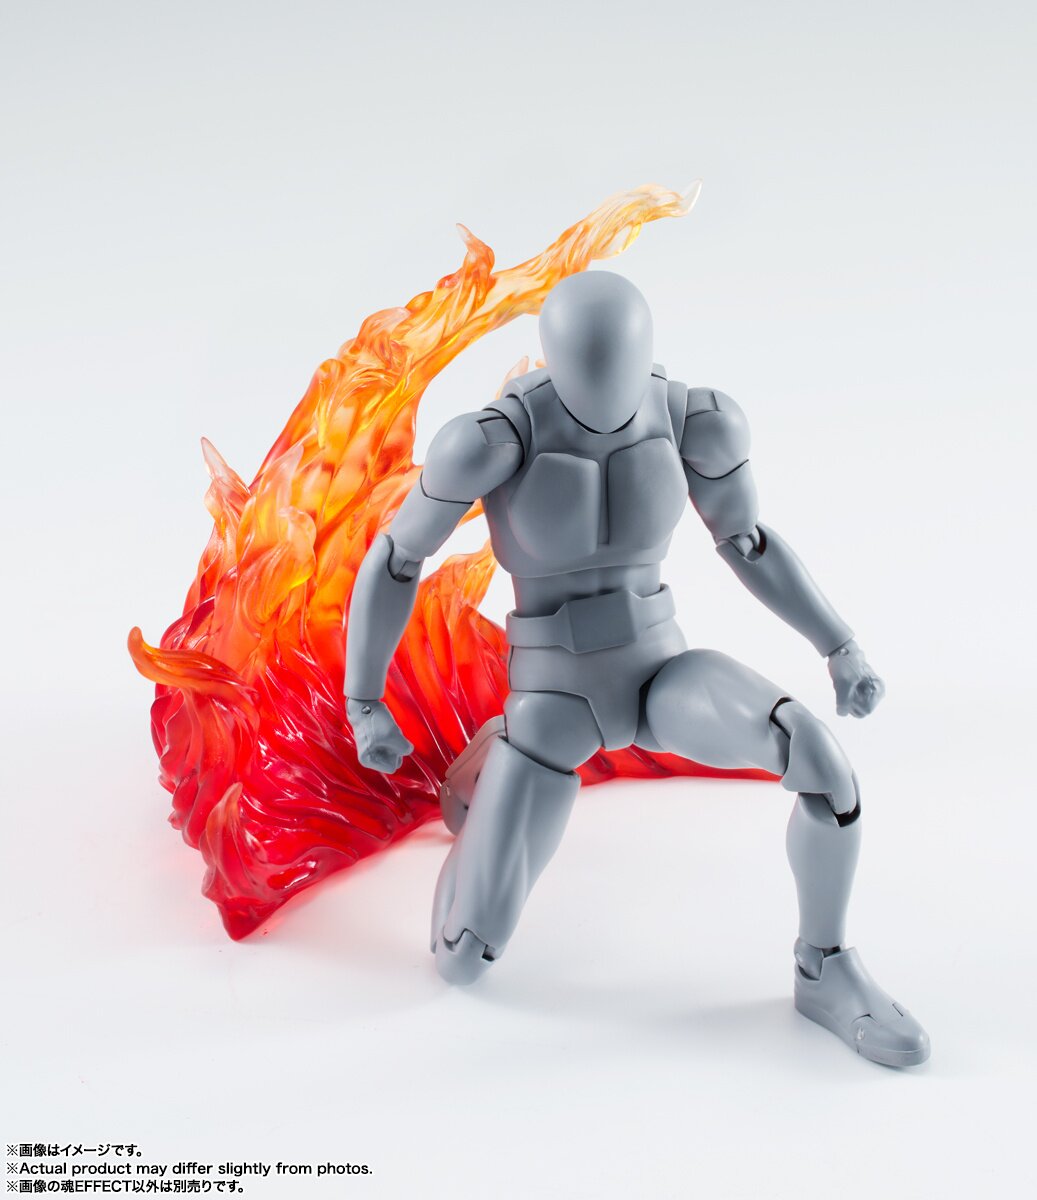 S.H.Figuarts Tamashii Effect Burning Flame: Red Ver. - Tokyo Otaku